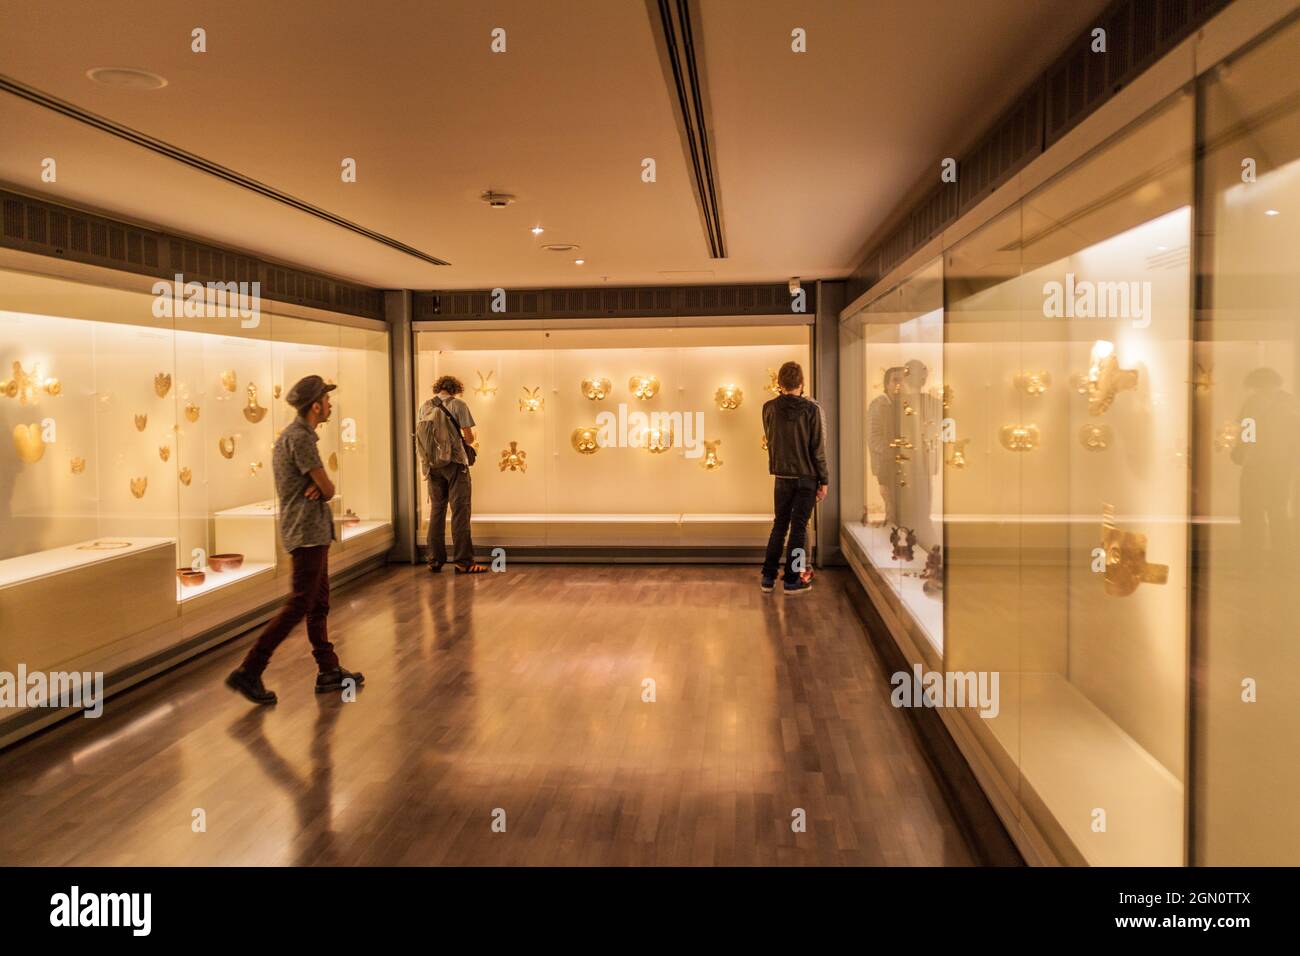 BOGOTA, KOLUMBIEN - 24. SEPTEMBER 2015: Besucher des Goldmuseums (Museo del Oro) in Bogota, der Hauptstadt Kolumbiens. Stockfoto